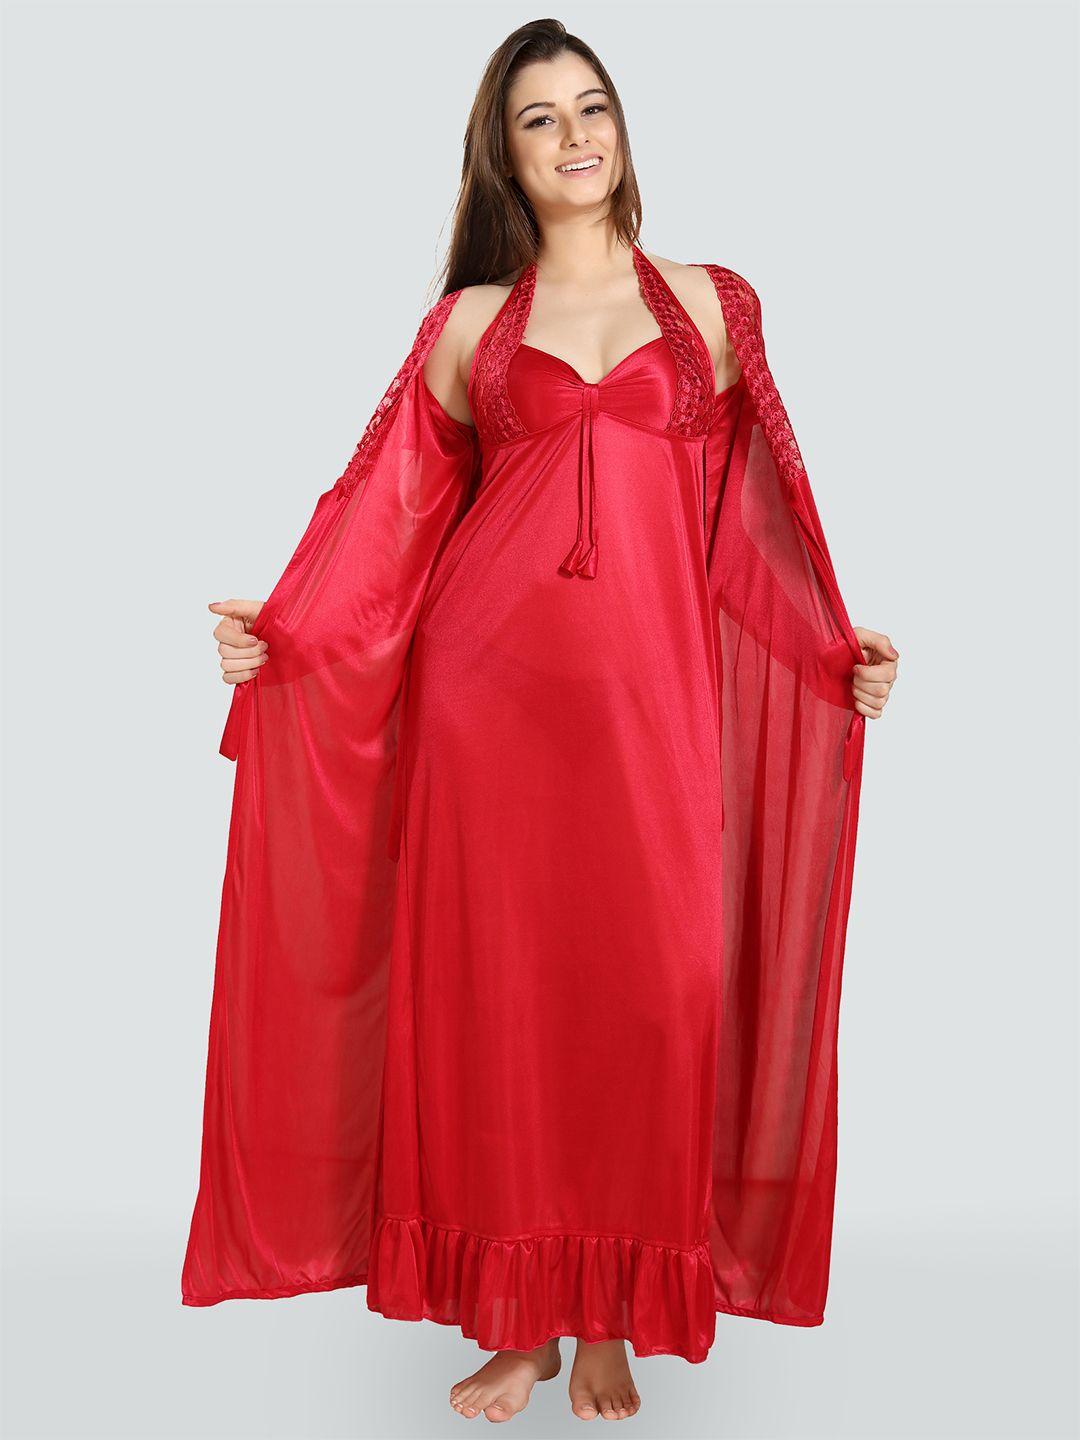 romaisa women red maxi nightdress